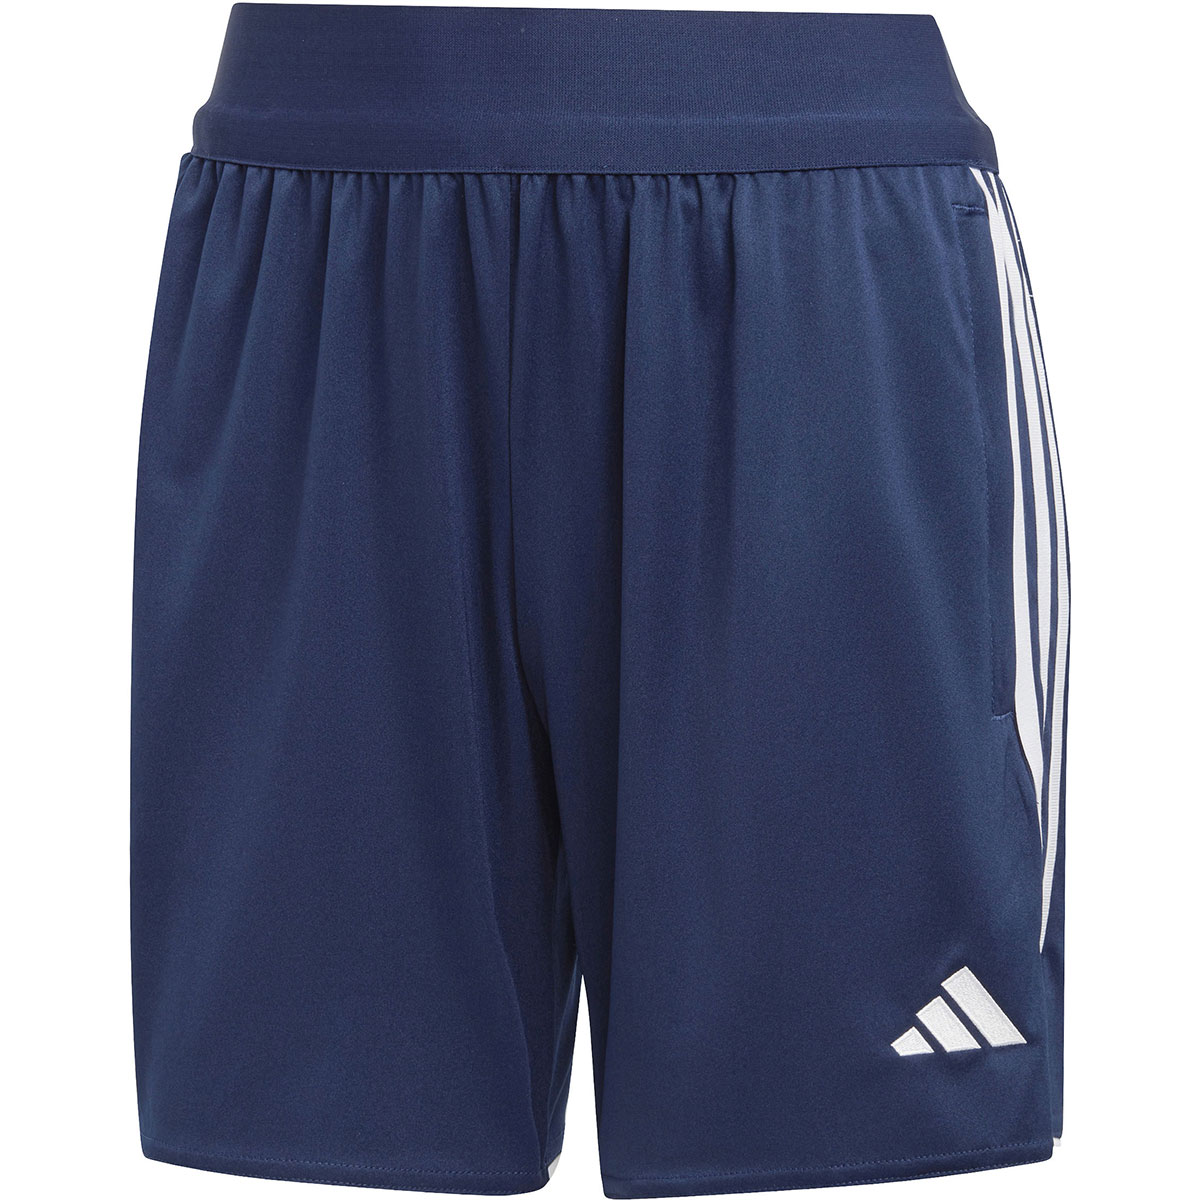 Adidas Damen Training Shorts Tiro 23 blau